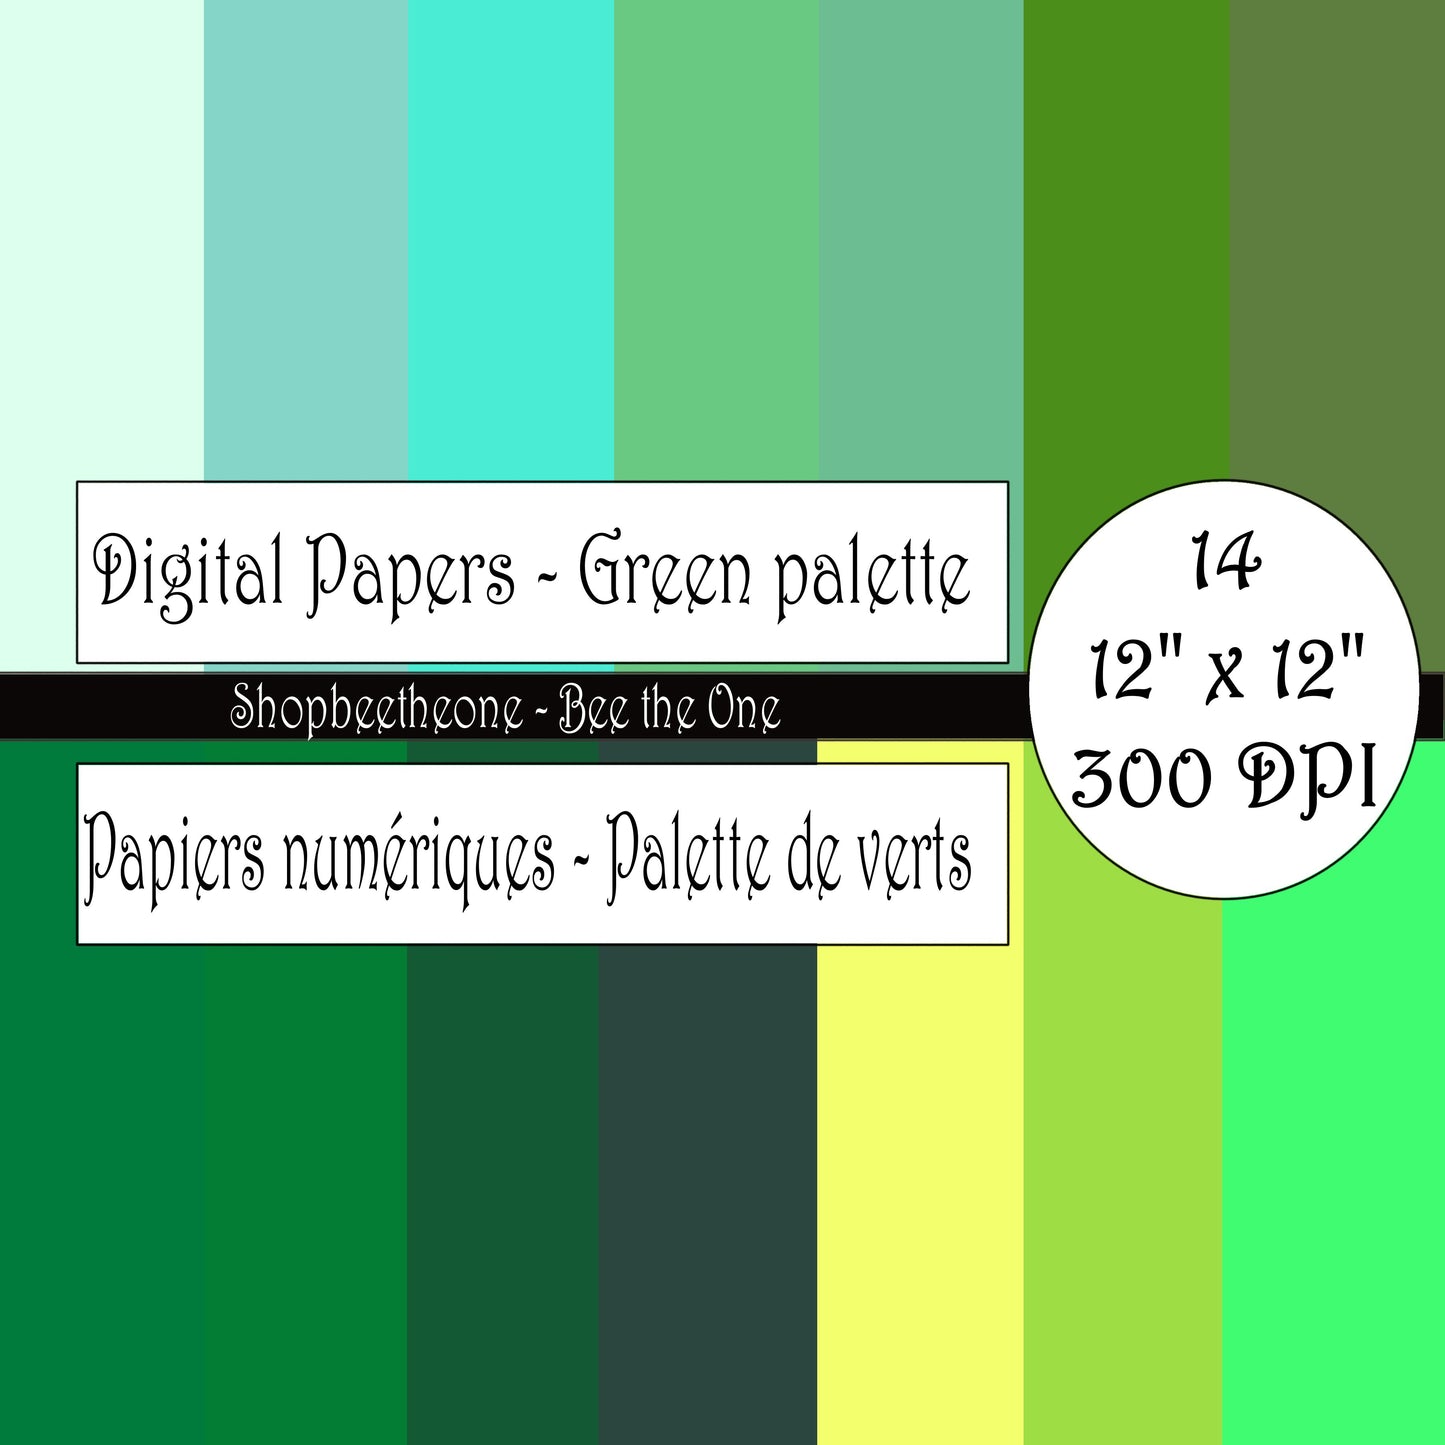 Papiers numériques "Palette de Verts" - 12" x 12" - 300 DPI - Set de 14 images - A télécharger